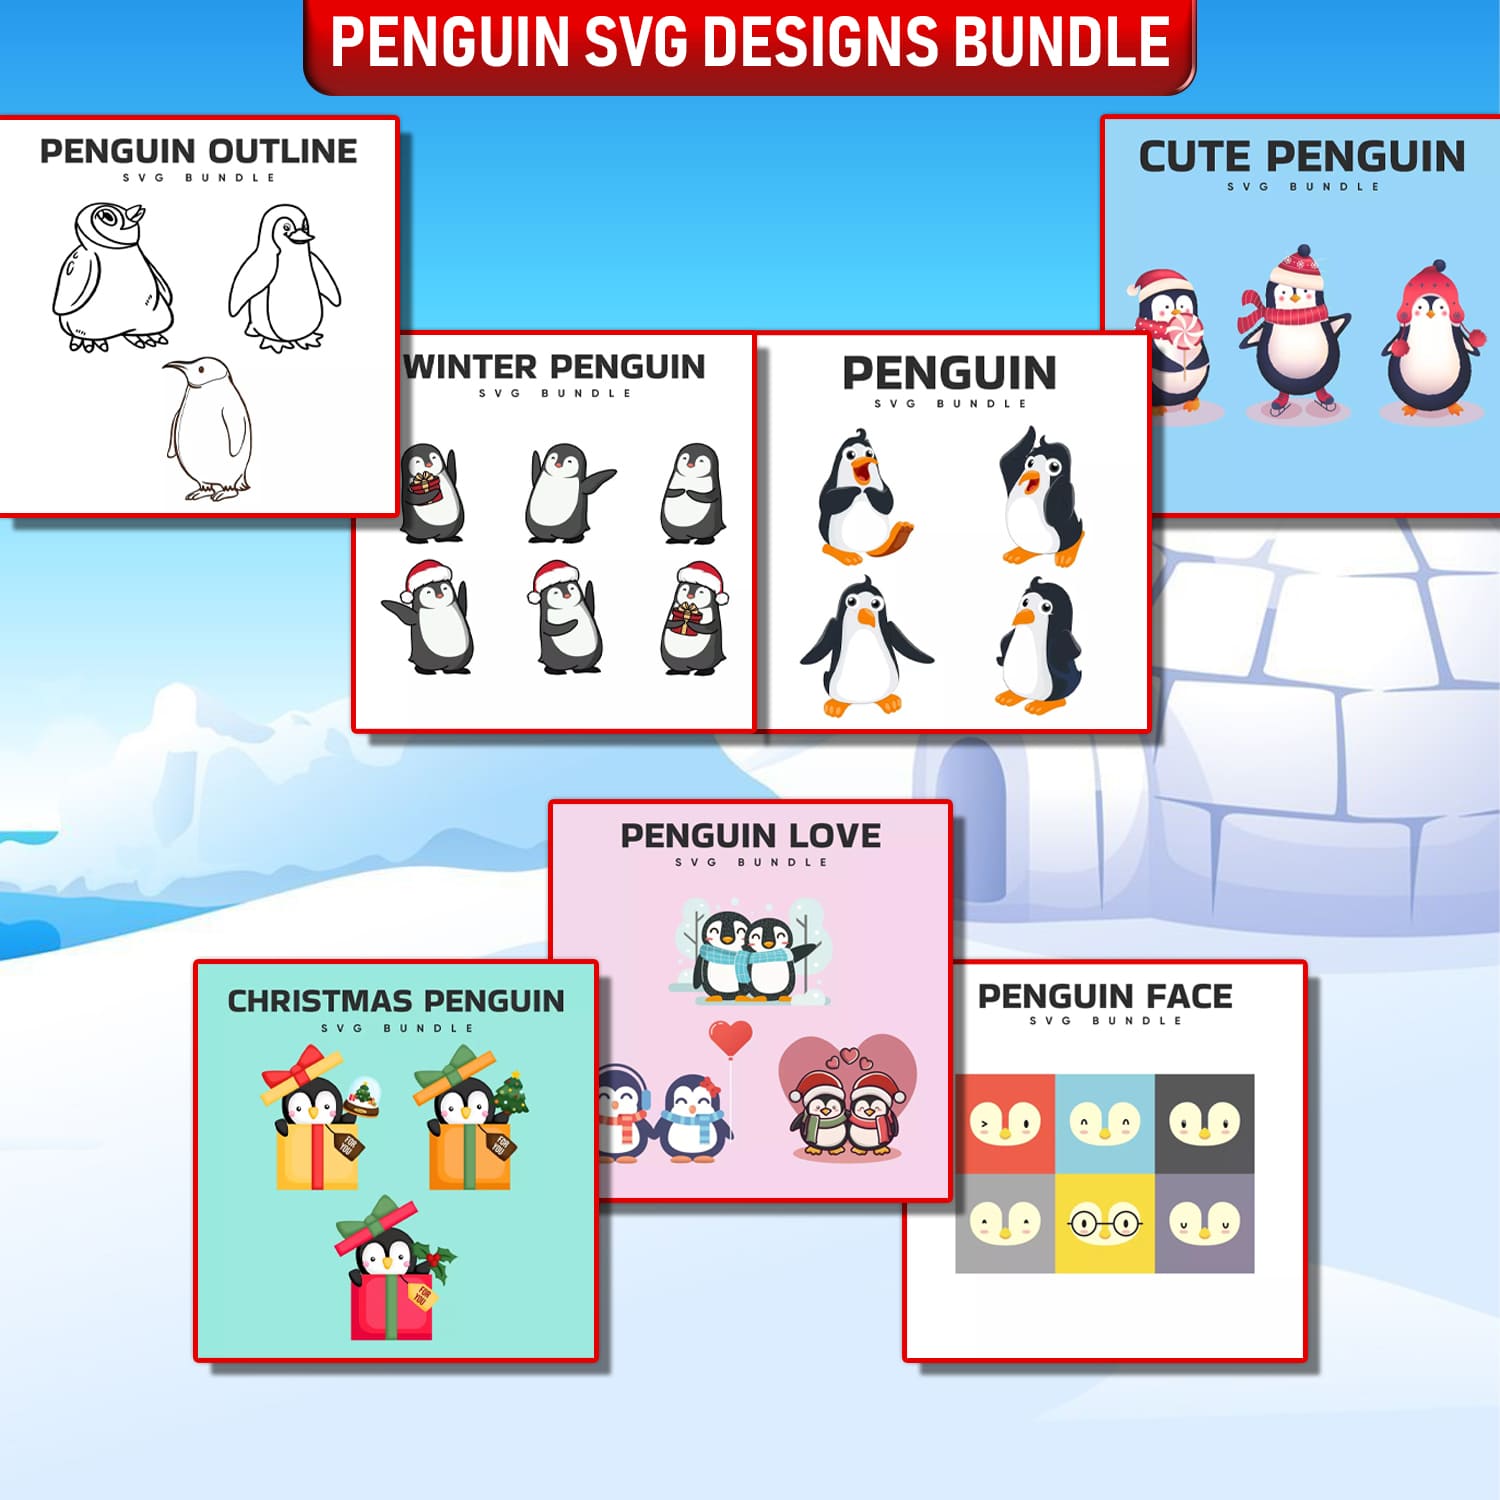 Penguin penguin penguin penguin penguin penguin penguin penguin penguin penguin penguin penguin penguin penguin penguin.